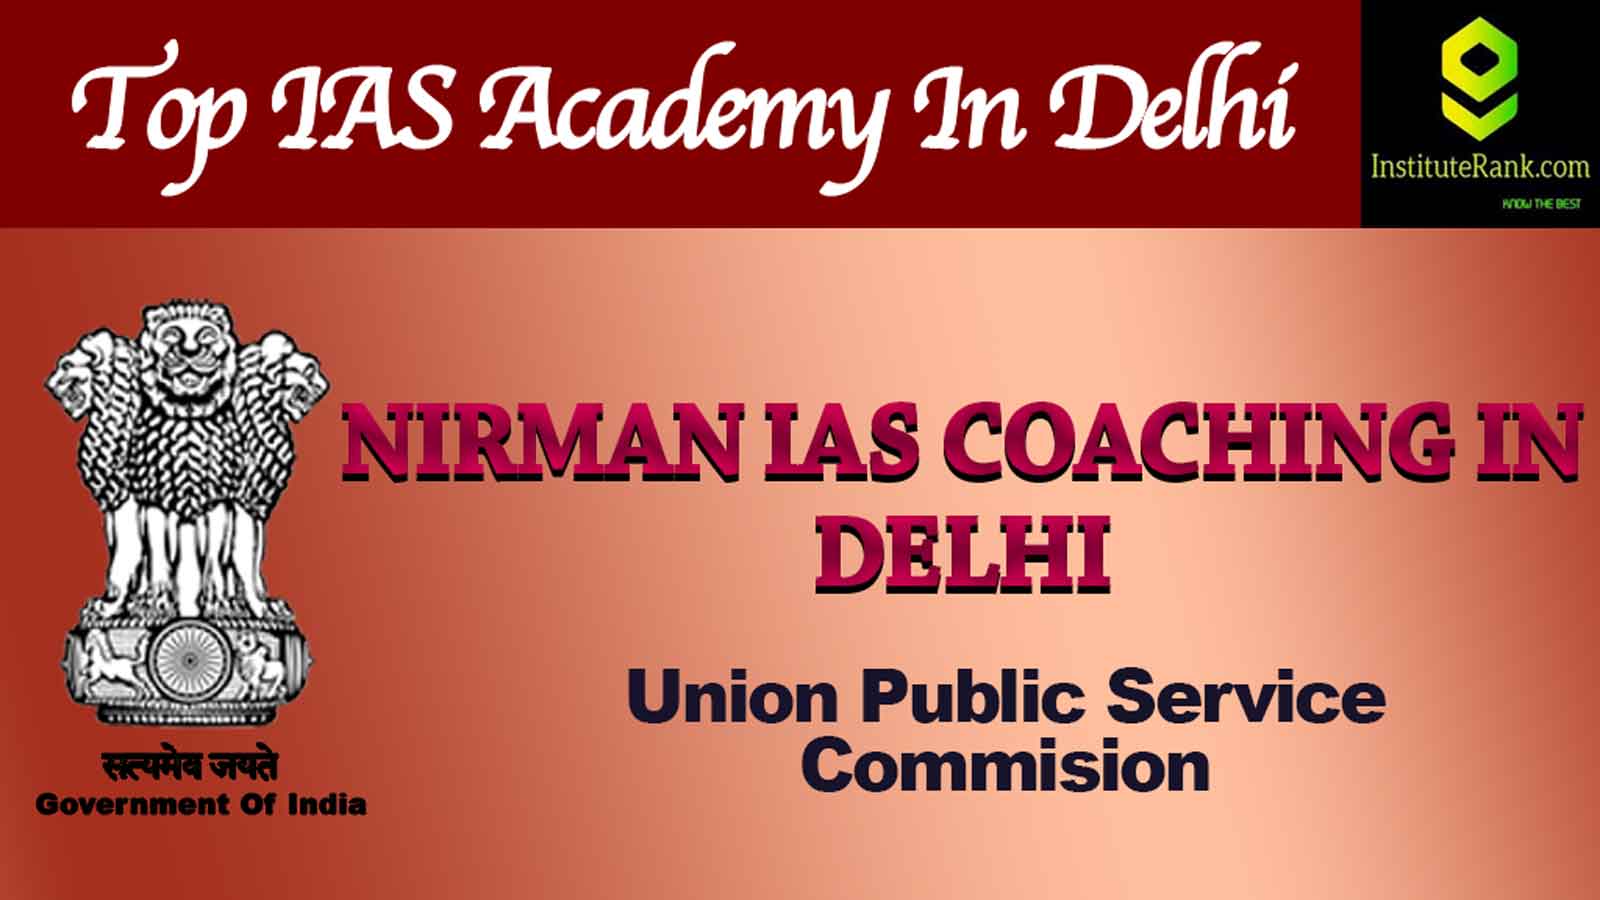 Nirman IAS Academy in Delhi